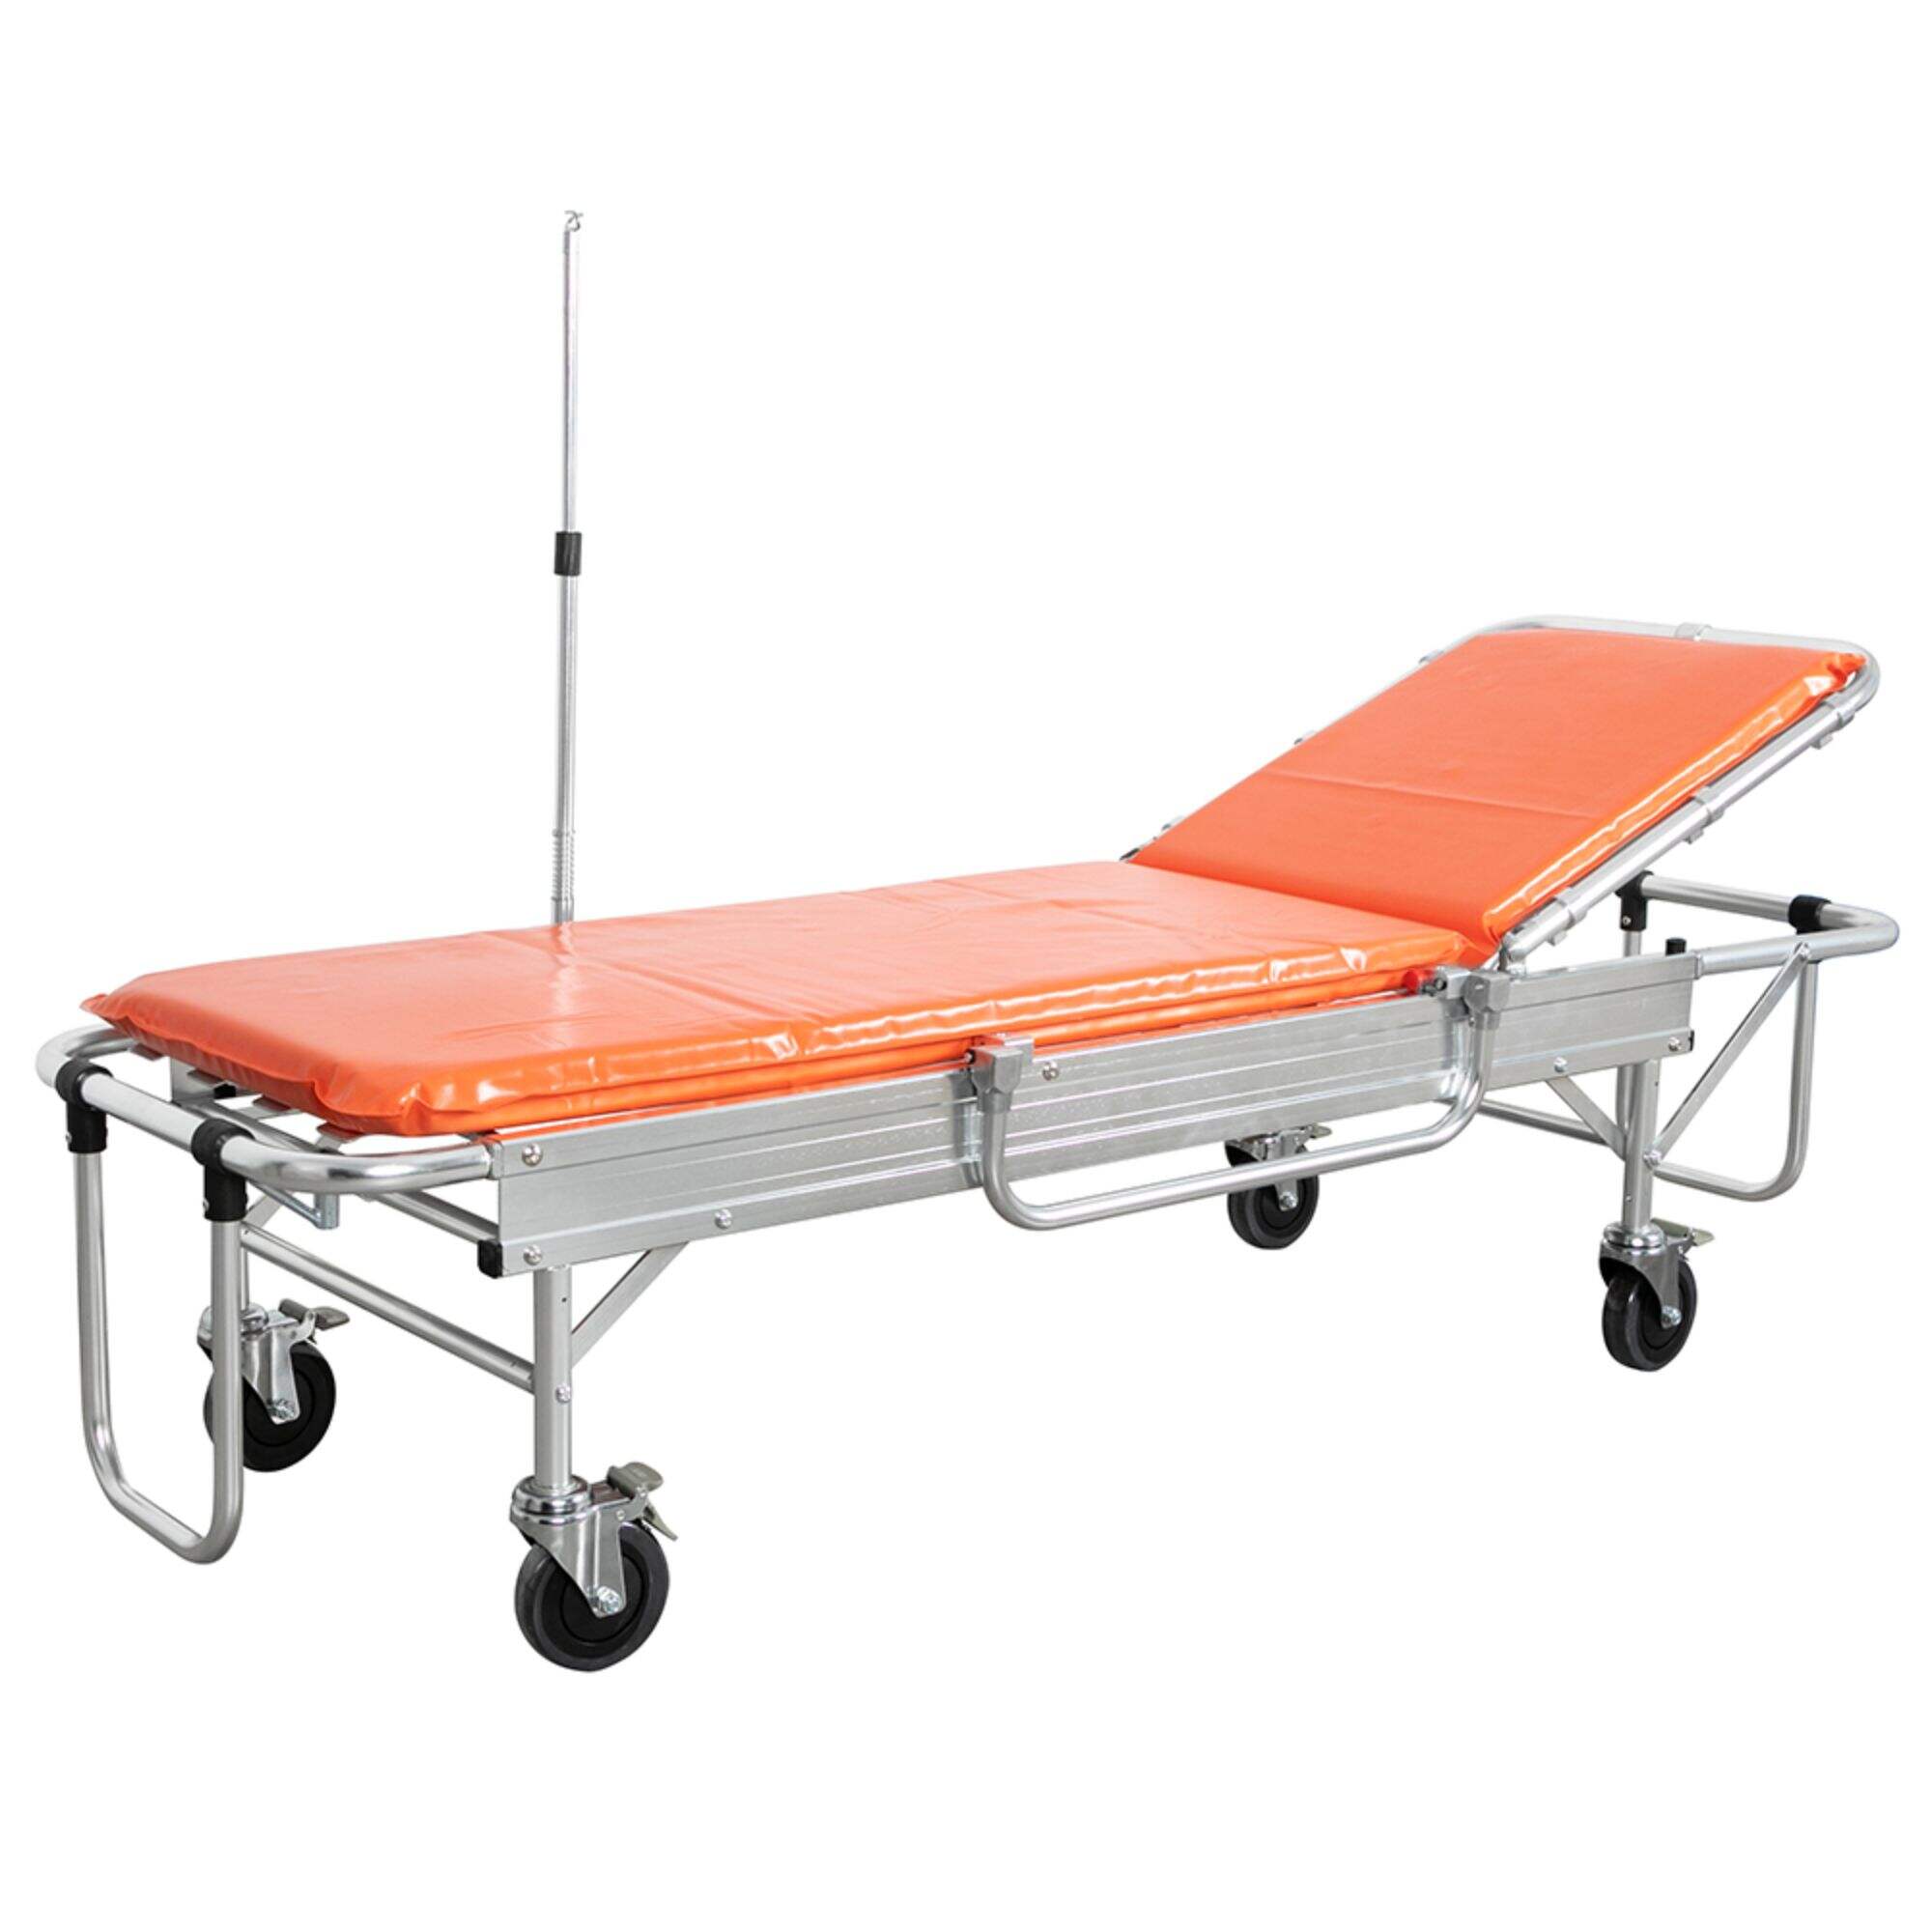 YFTA-SP3 Simple Ambulance Stretcher Trolley